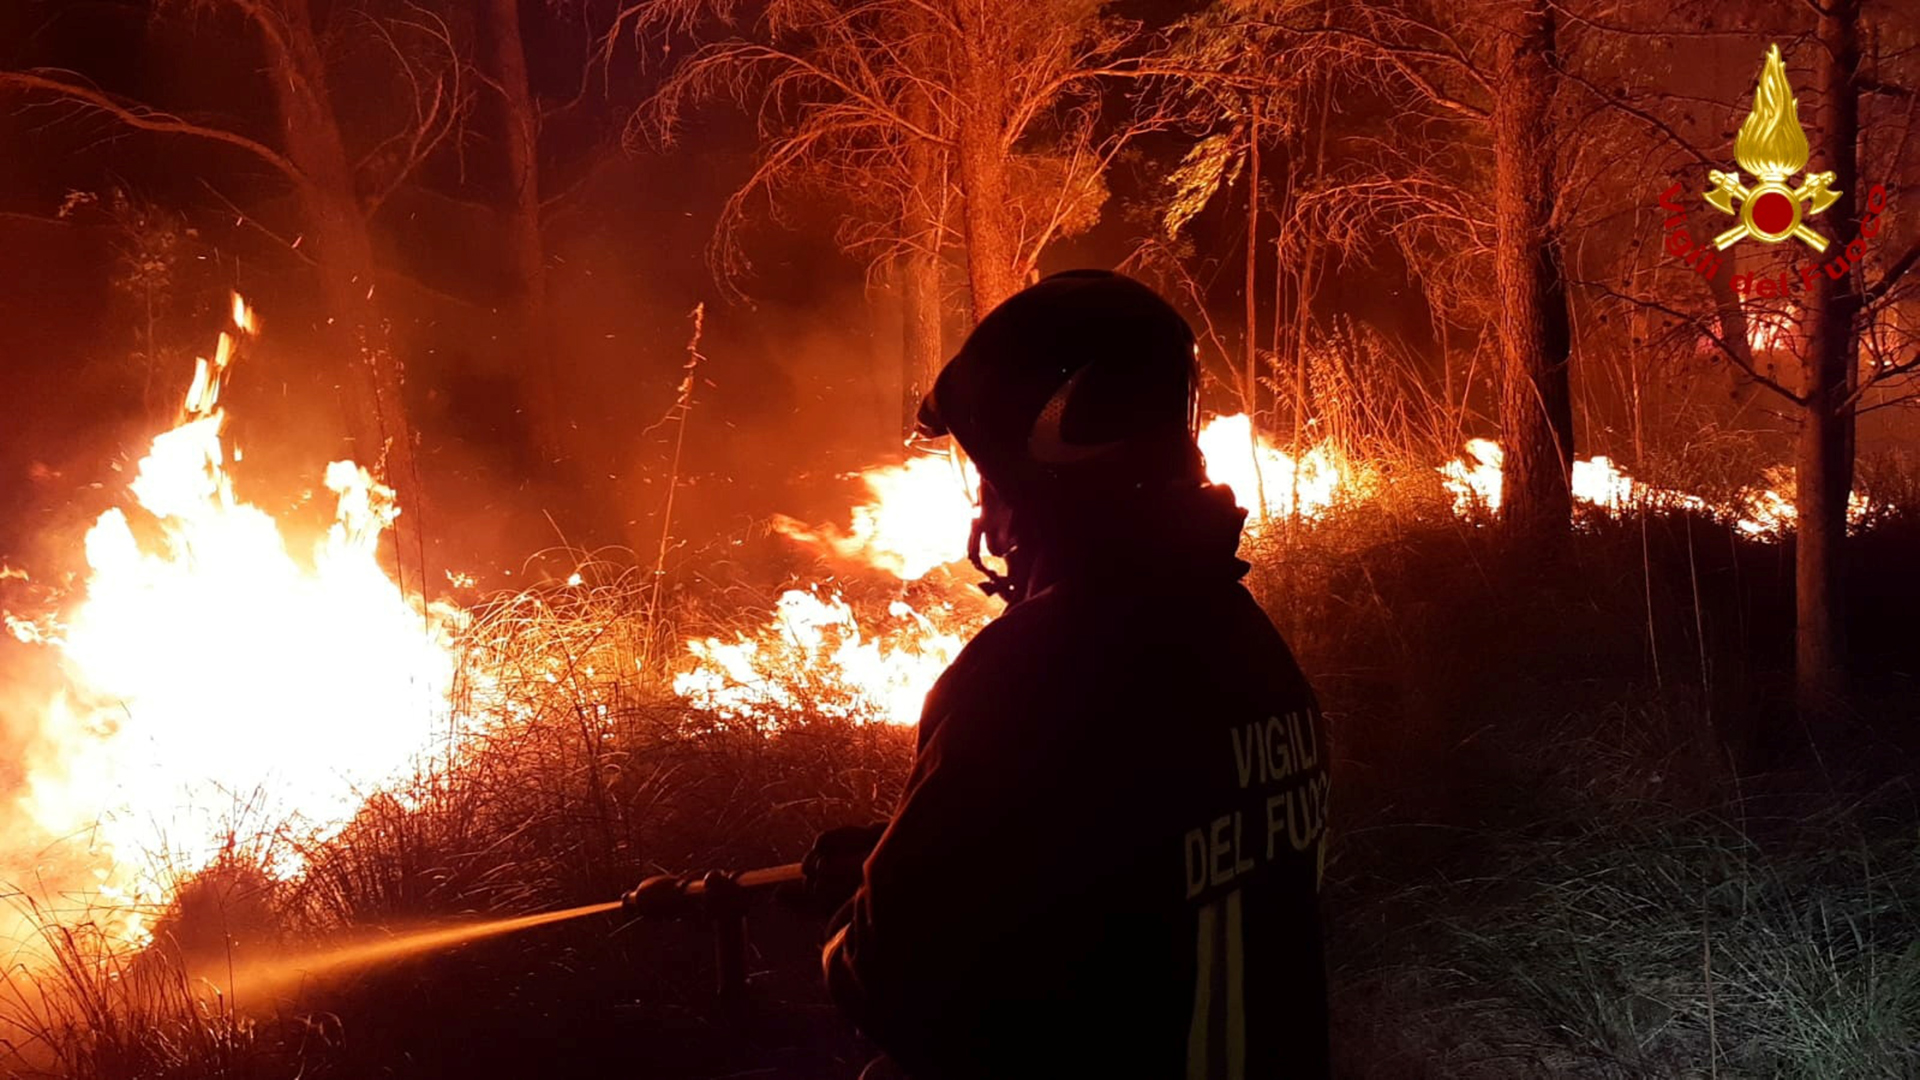 Ein Feuerwehrmann kämpft gegen die Flammen in der Nähe des sizilianischen Dorfes Erice. | via REUTERS